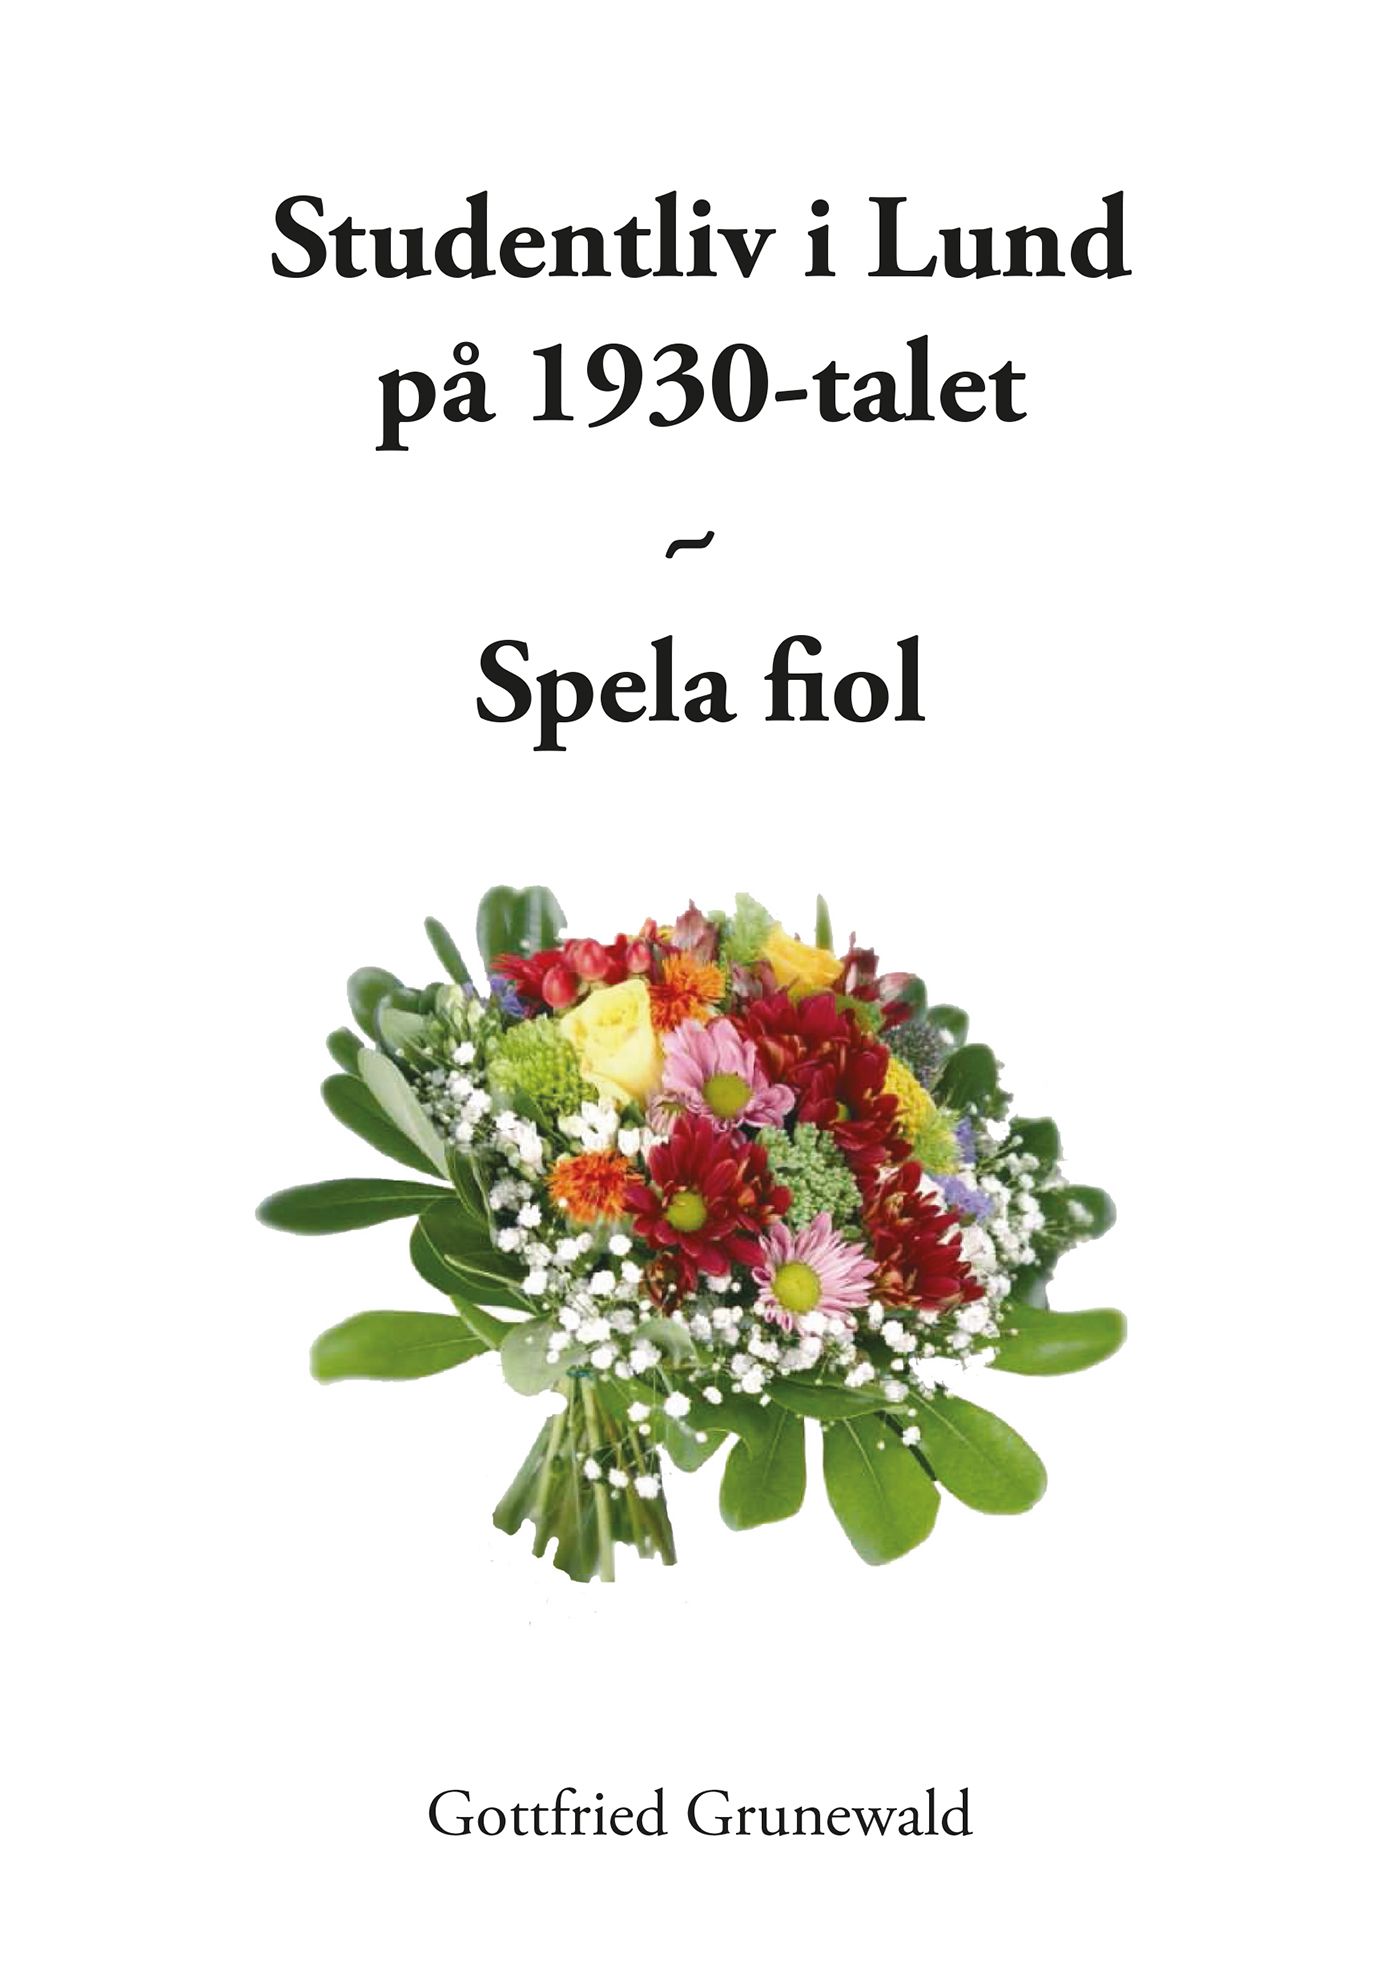 Studentliv i Lund på 1930-talet - Spela fiol, e-bog af Gottfried Grunewald